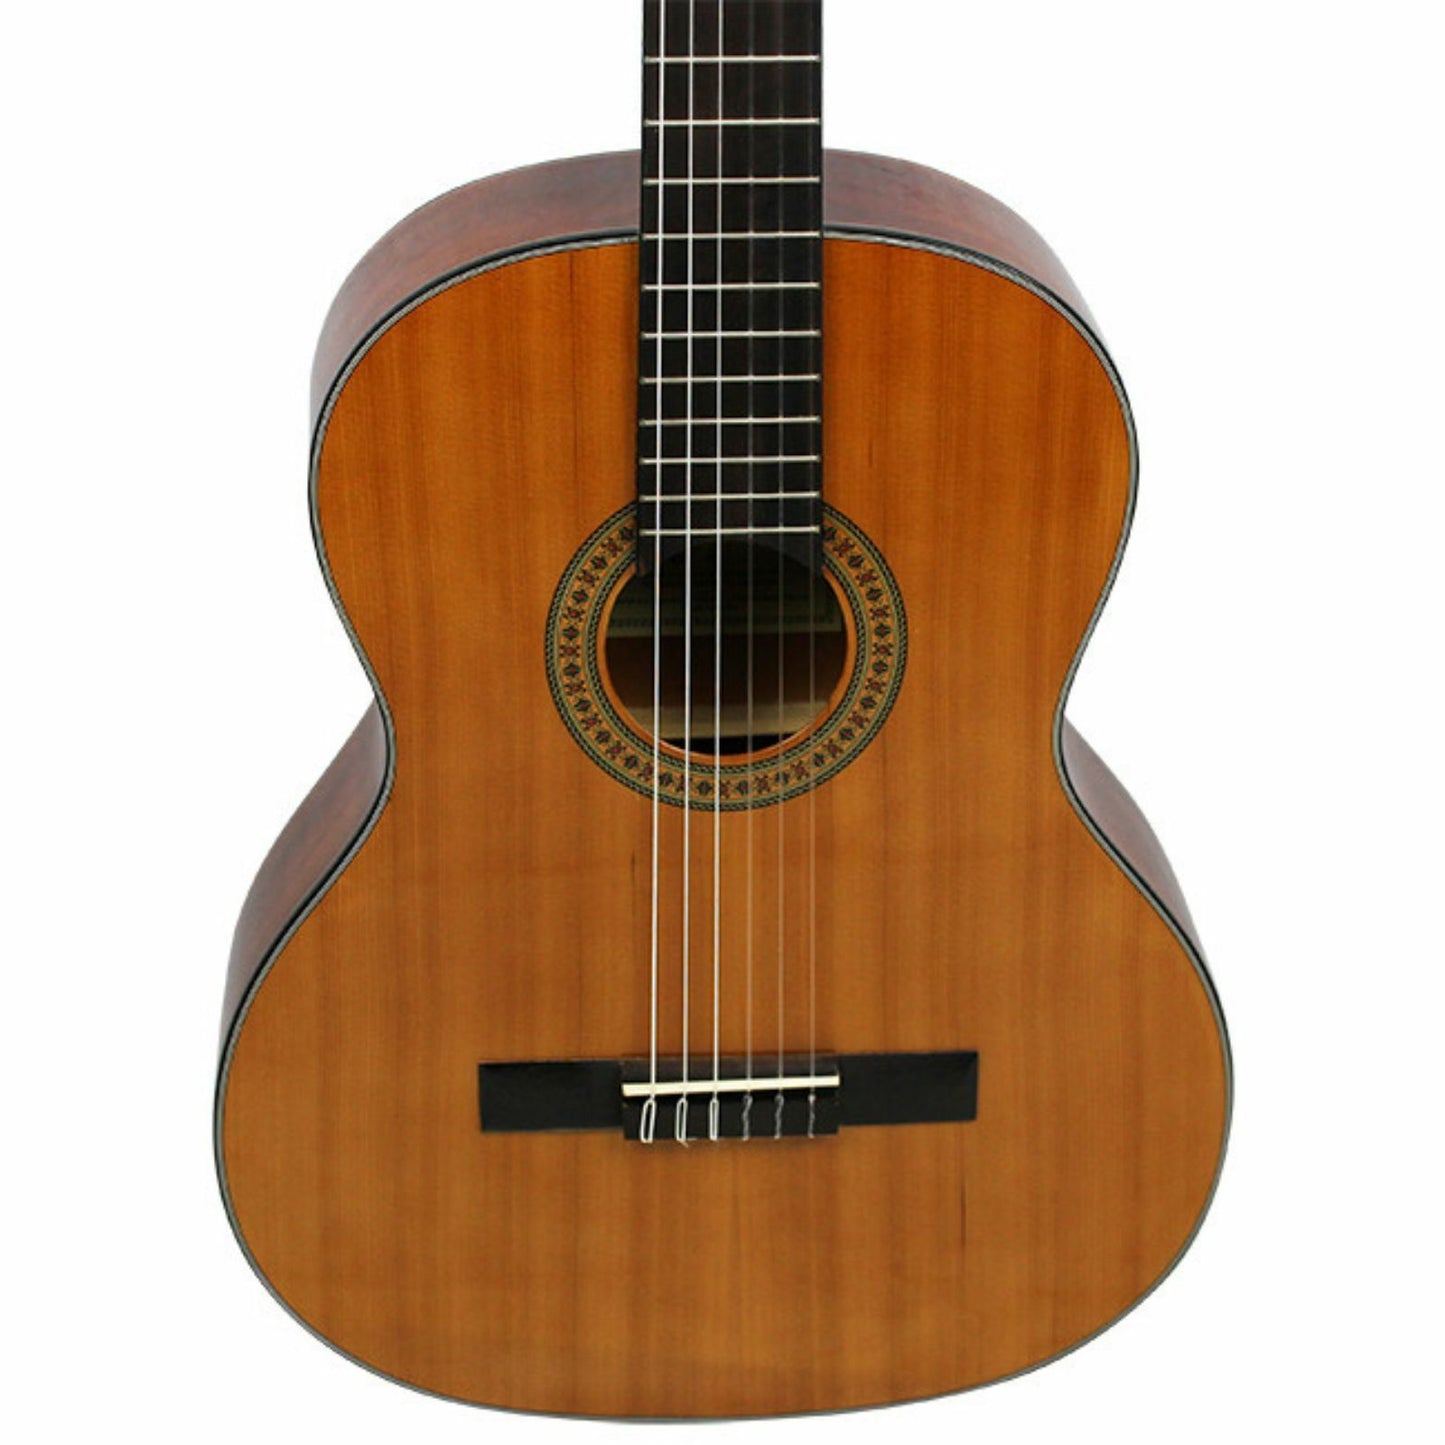 Axiom Segovia Classical Guitar